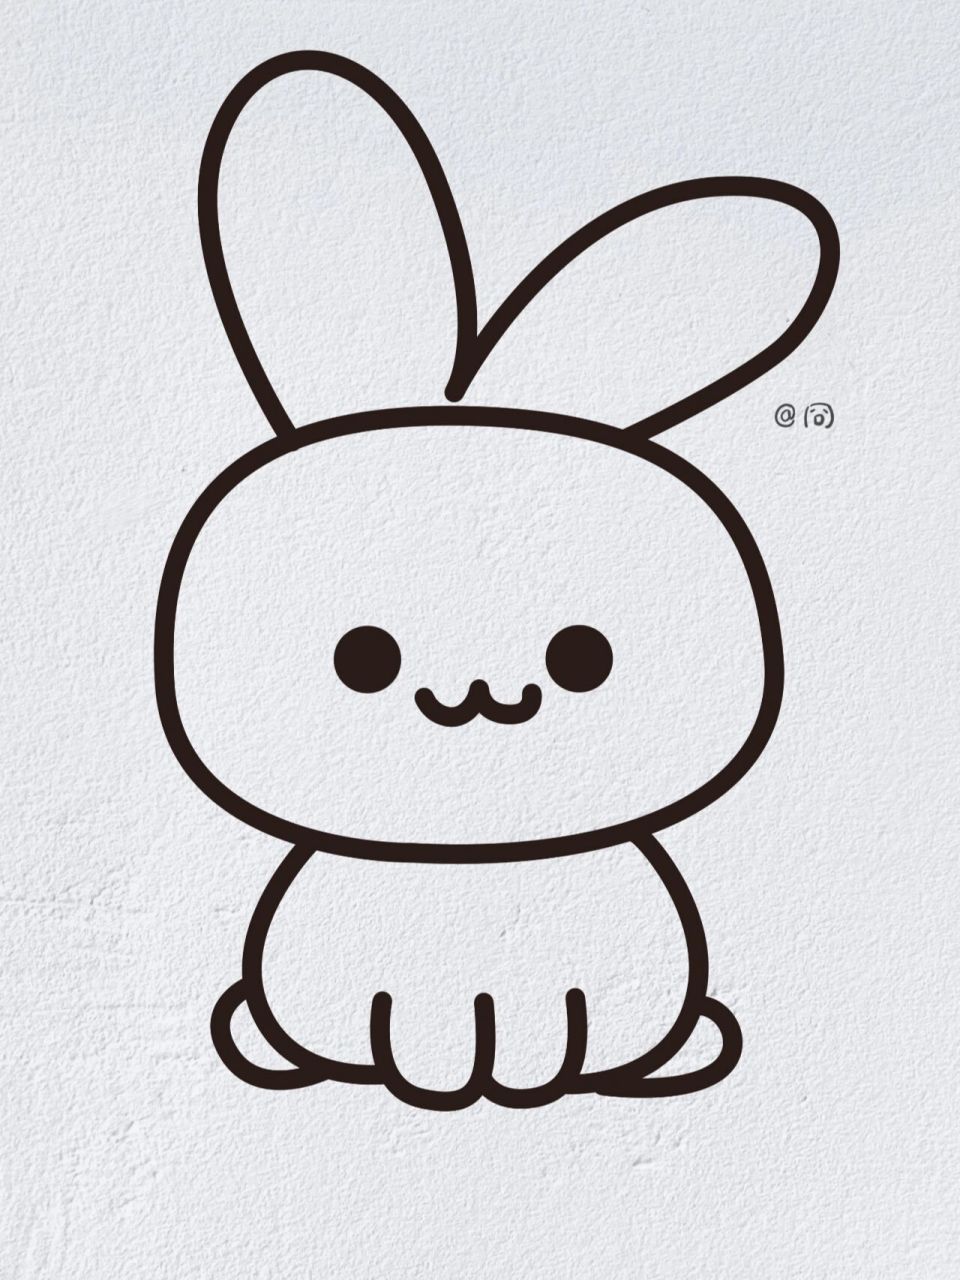 画兔子的简笔画简单图片